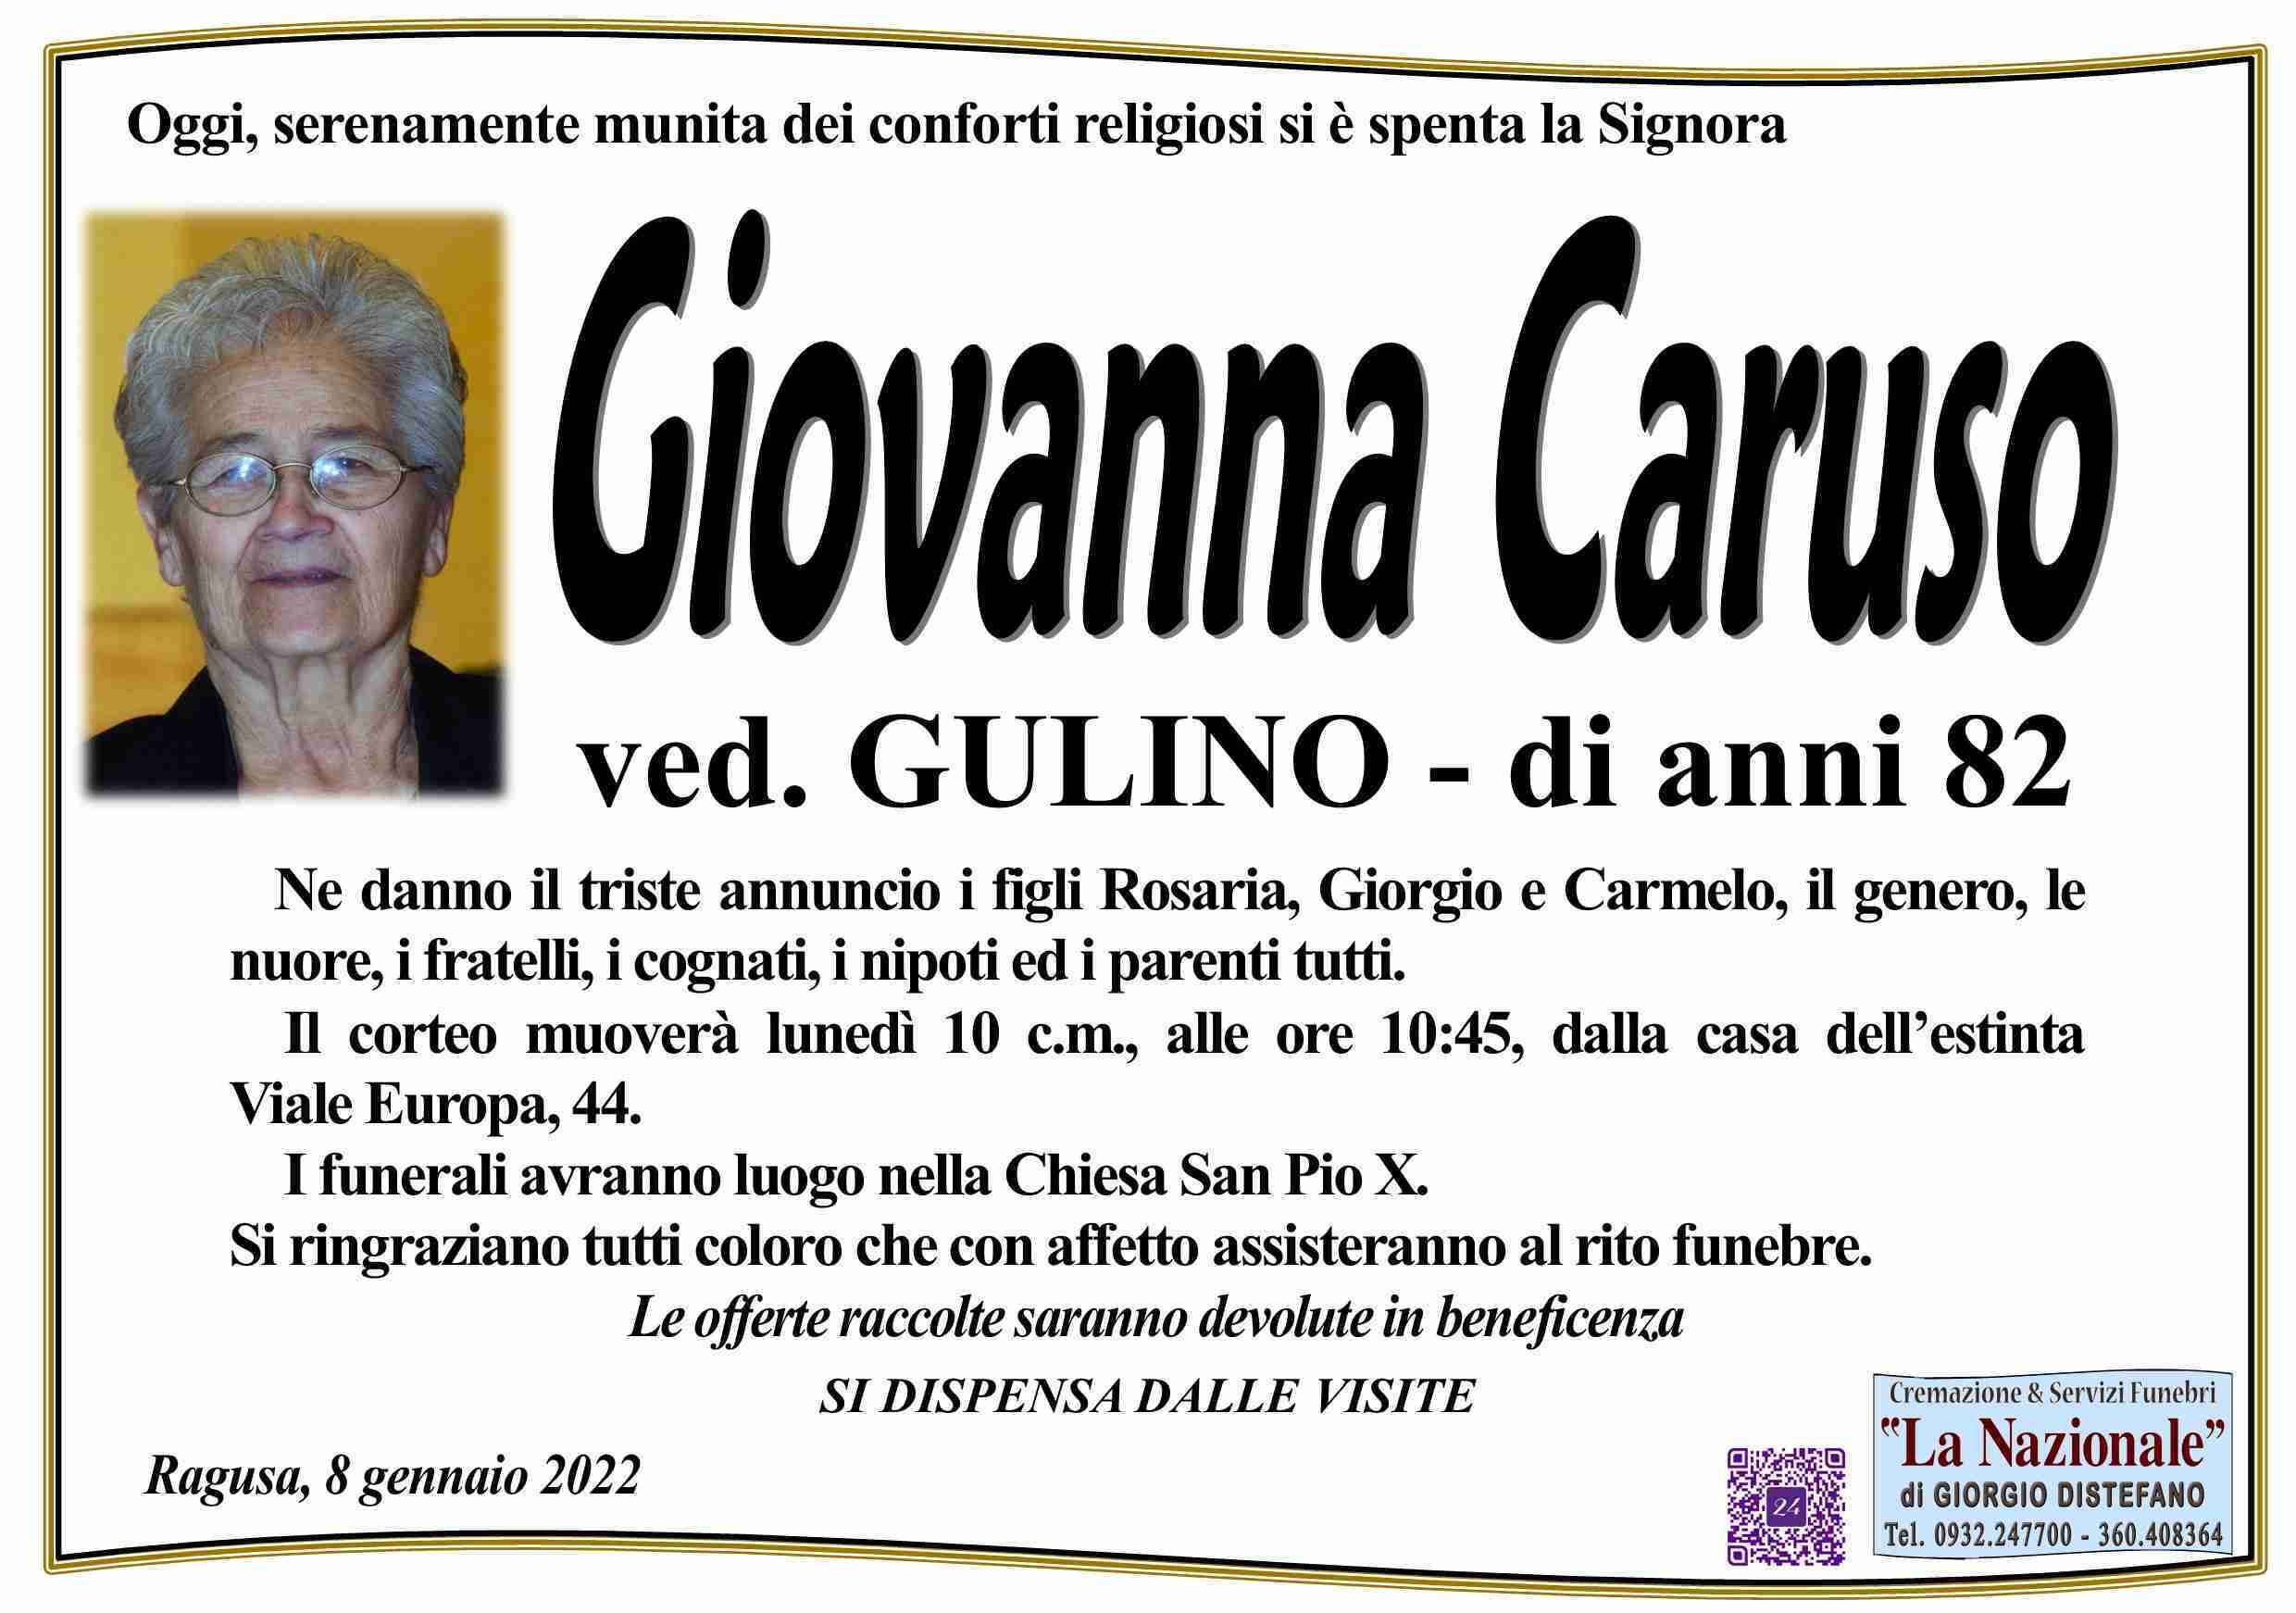 Giovanna Caruso